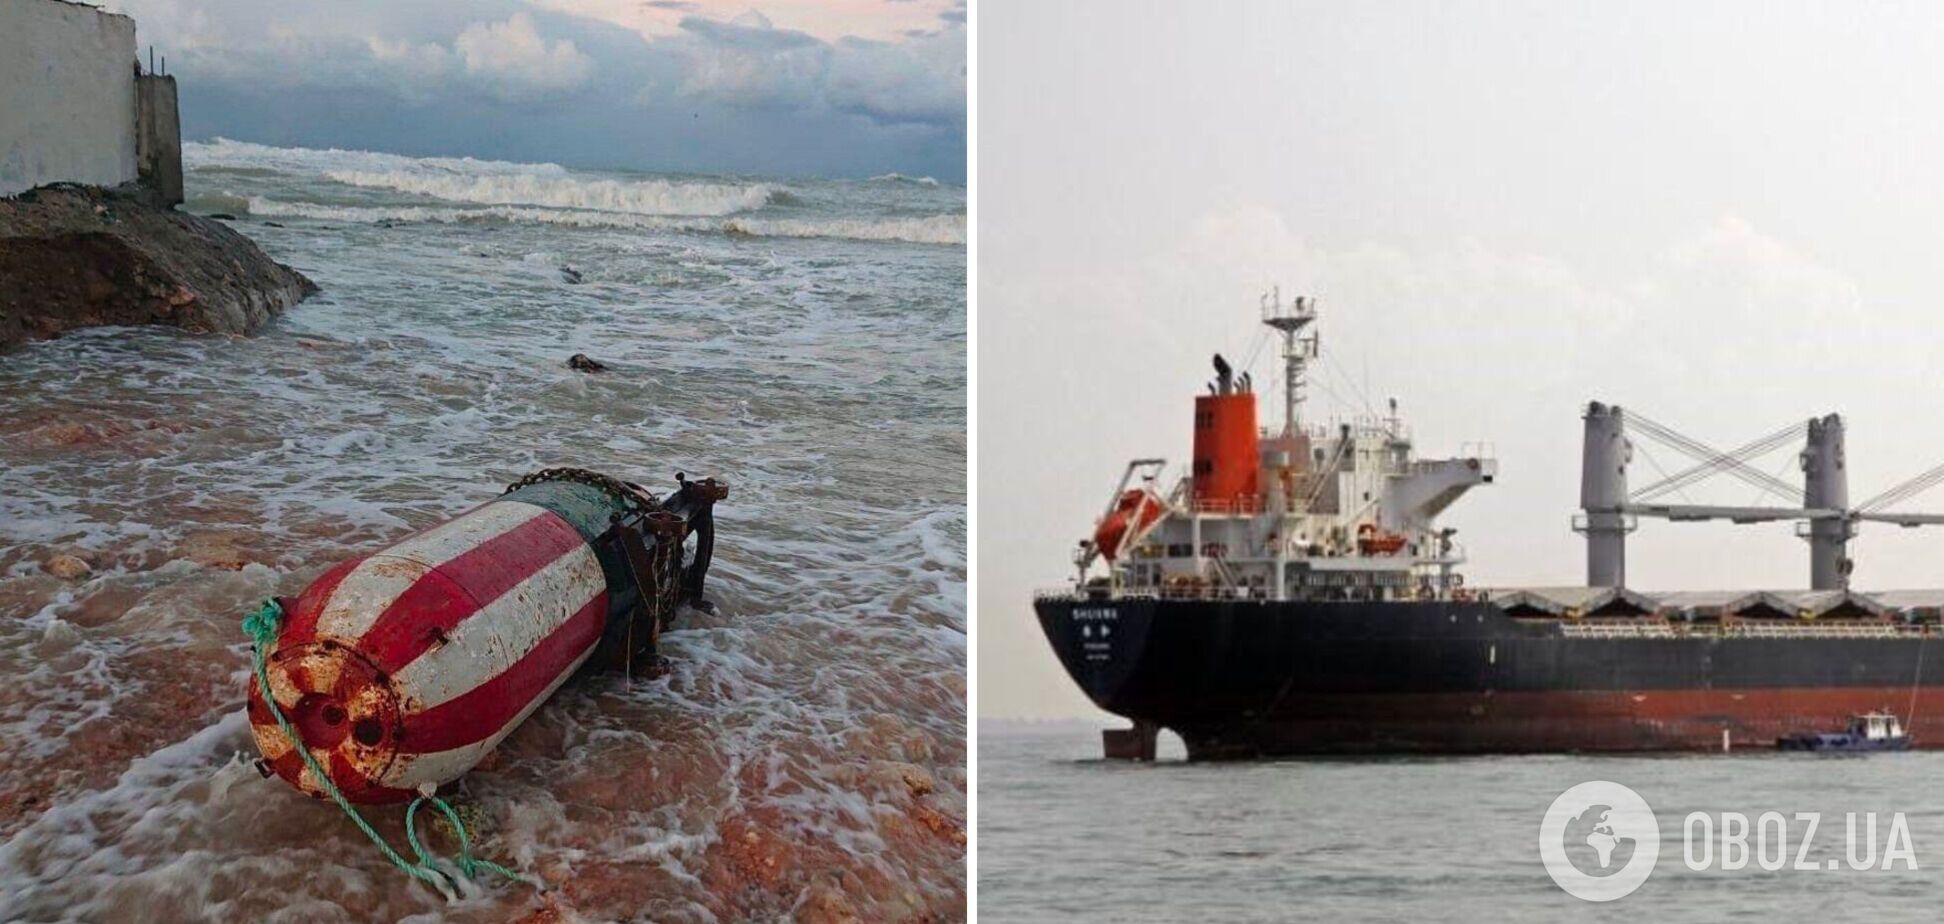 В Севастополе шторм вынес на берег морскую мину, а в Керчи – корабль. Фото и видео